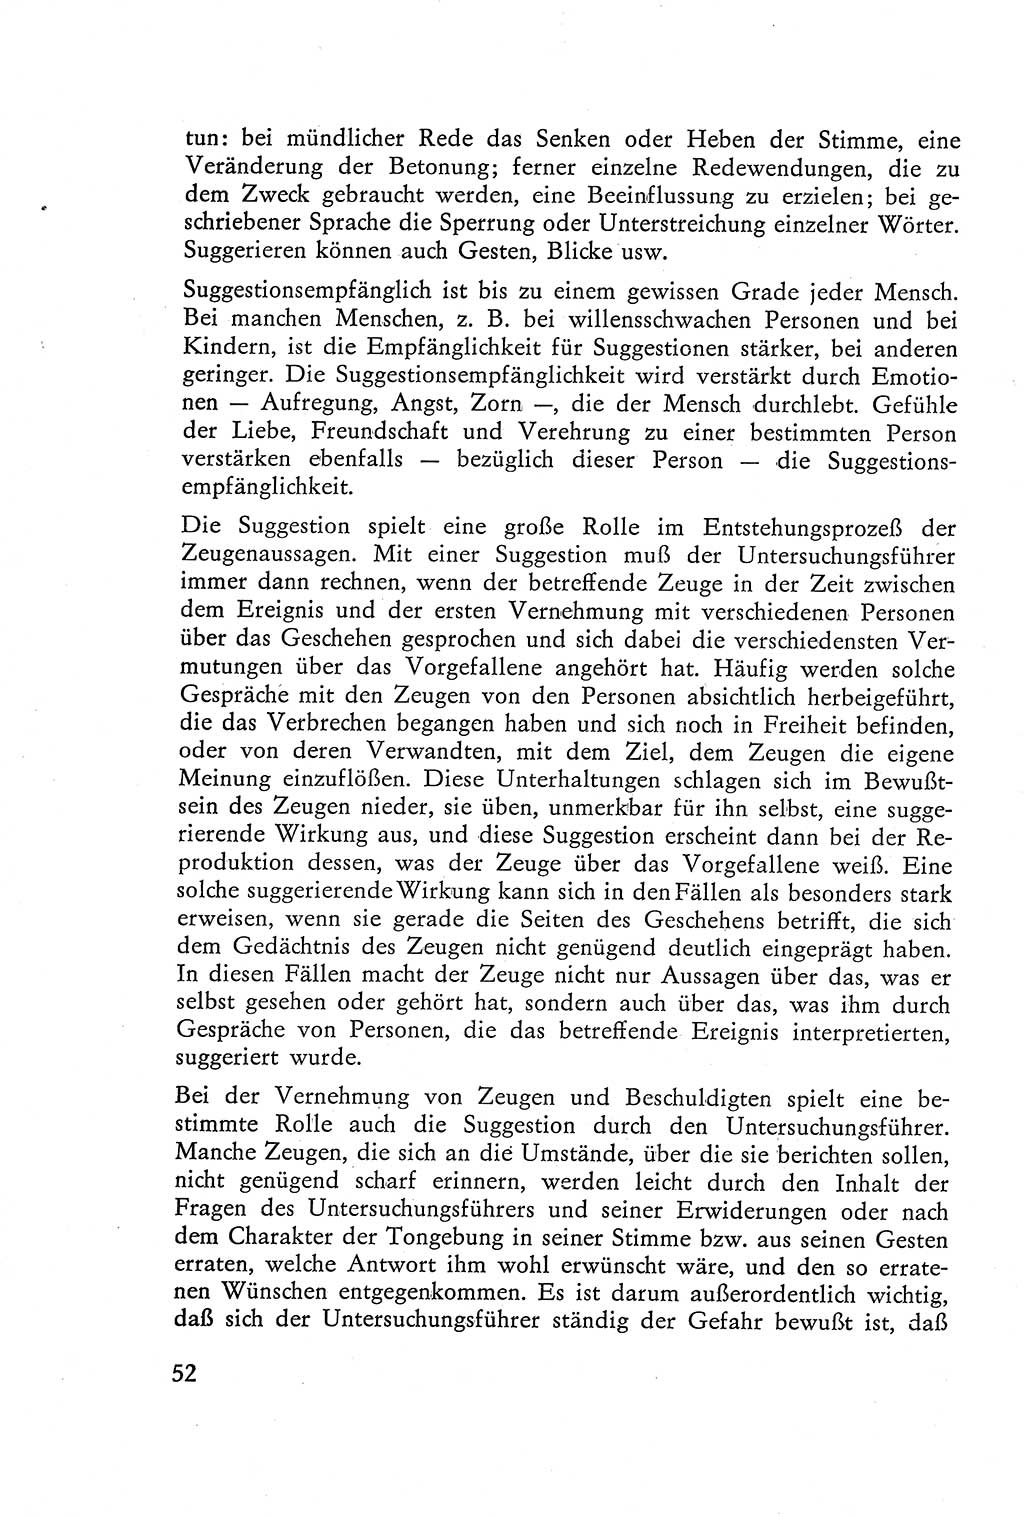 Die Vernehmung [Deutsche Demokratische Republik (DDR)] 1960, Seite 52 (Vern. DDR 1960, S. 52)